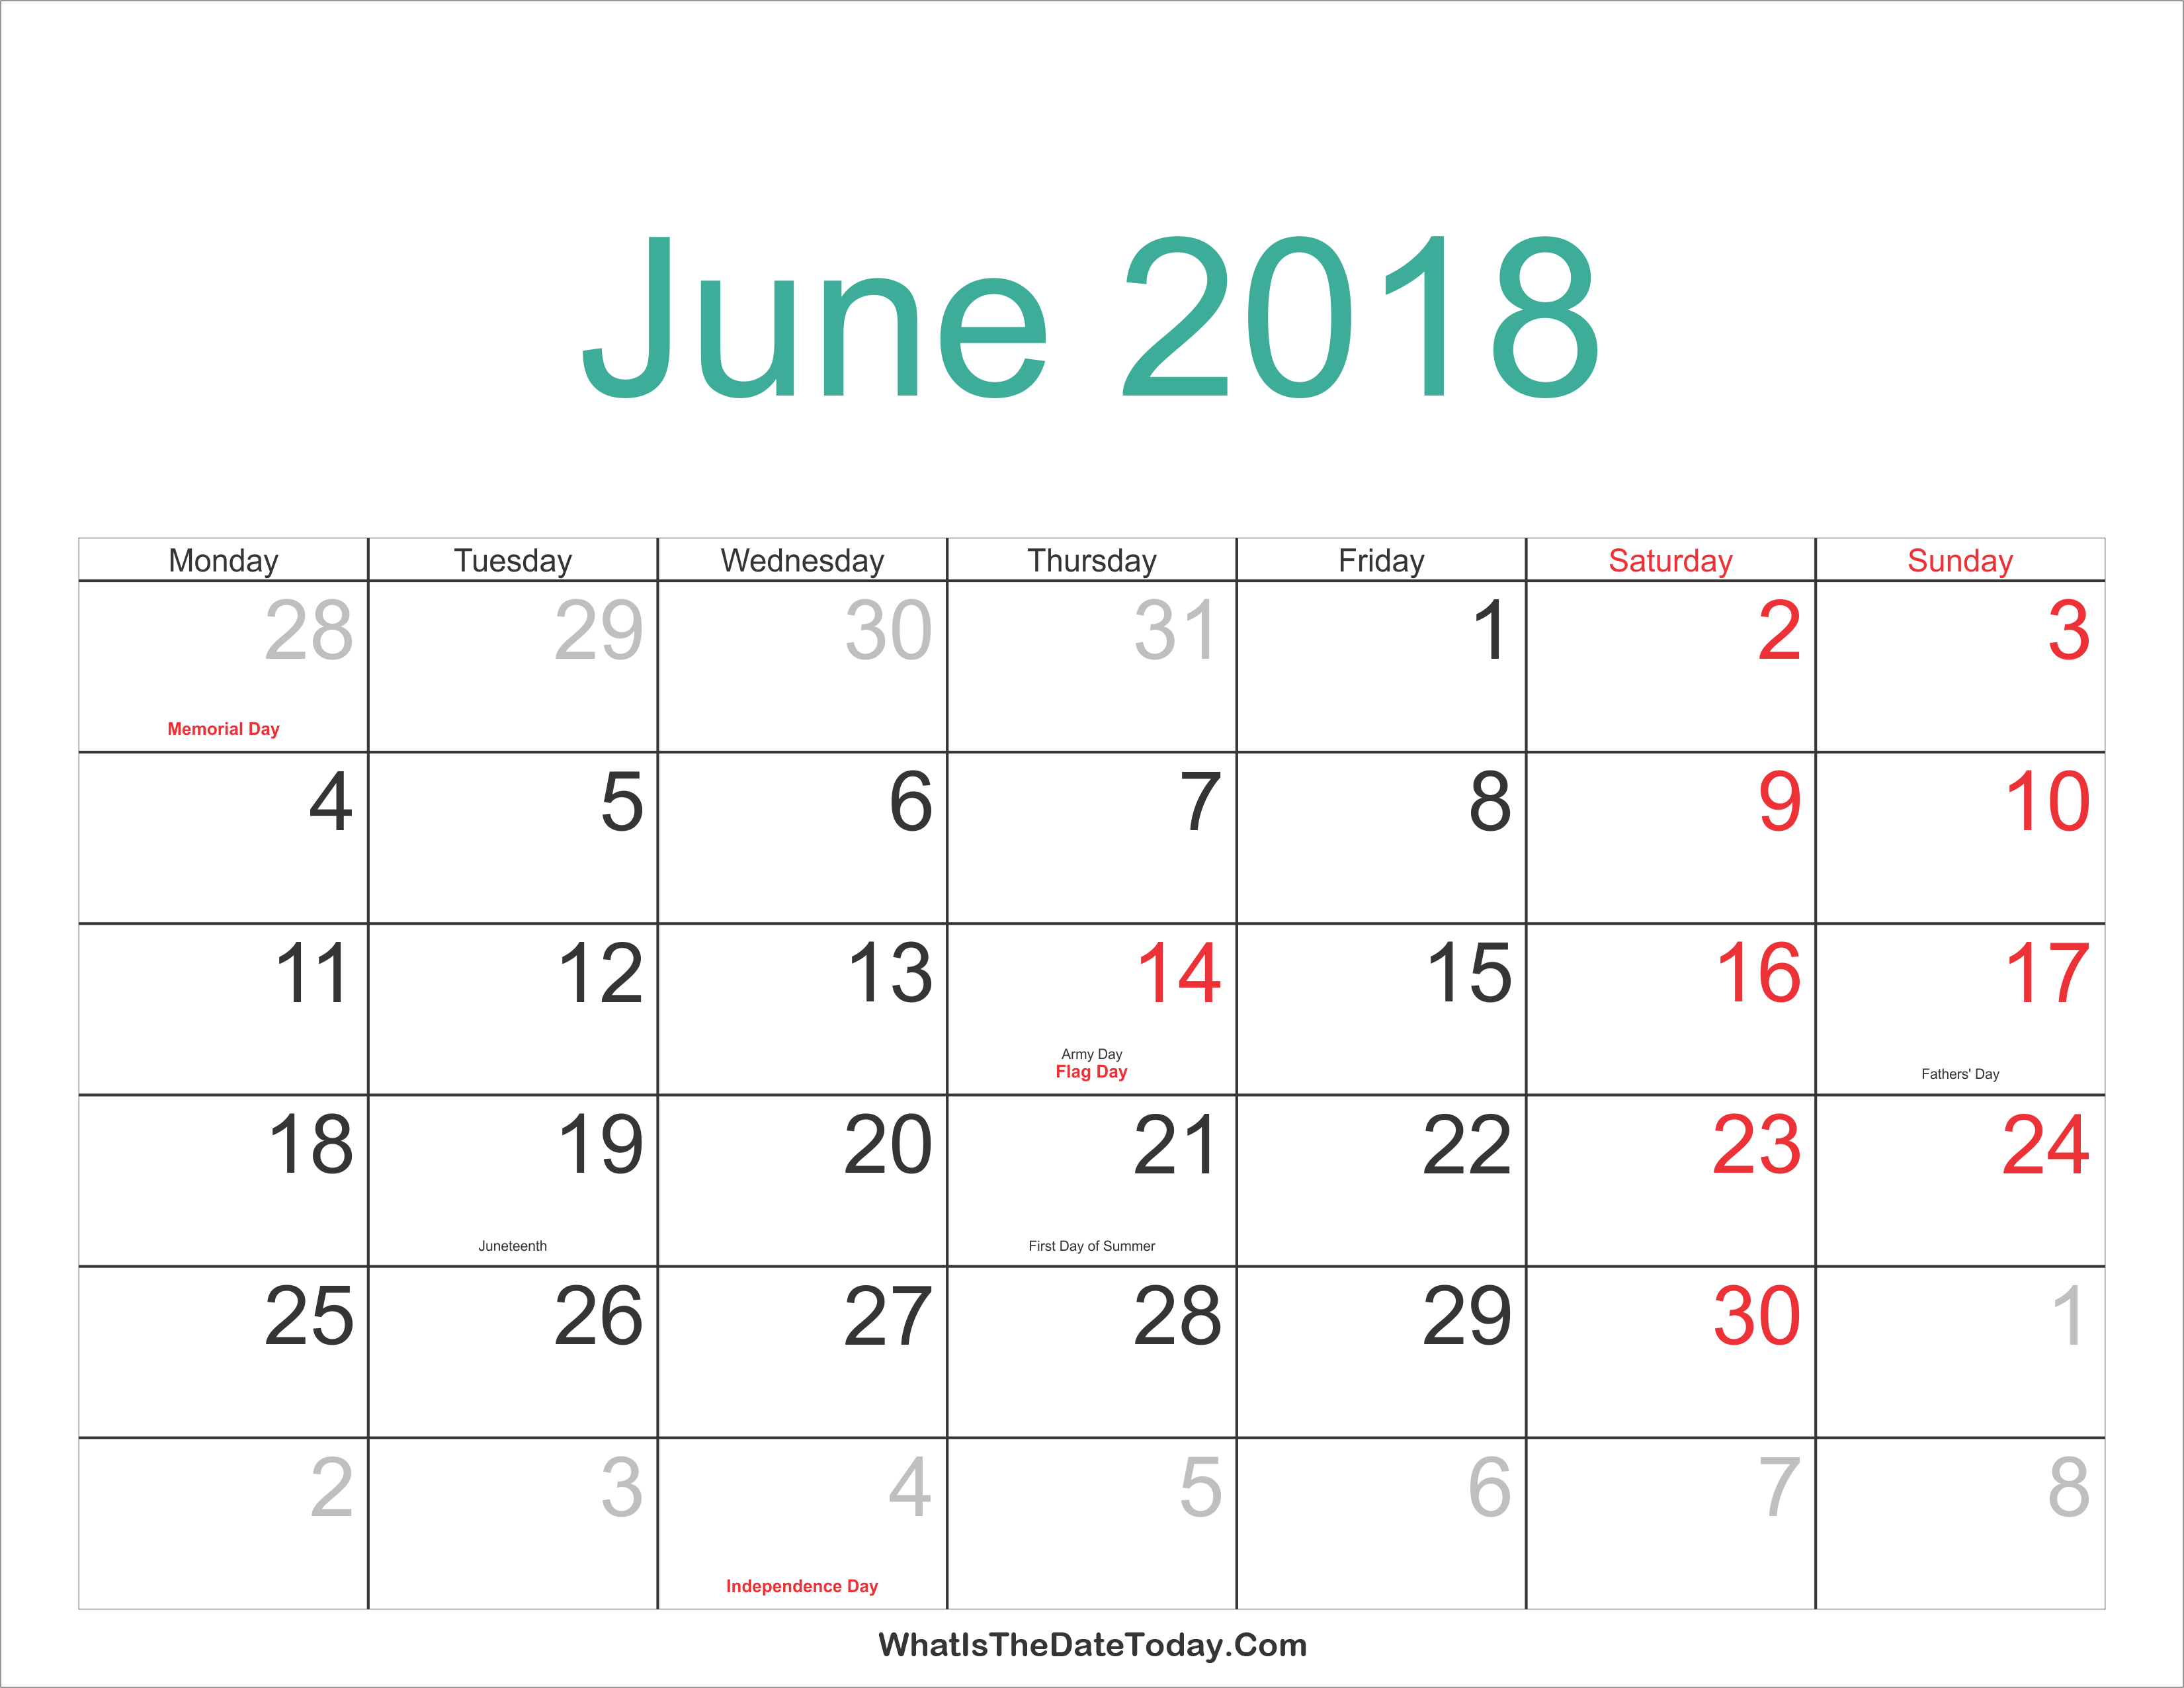 June 2018 Holidays